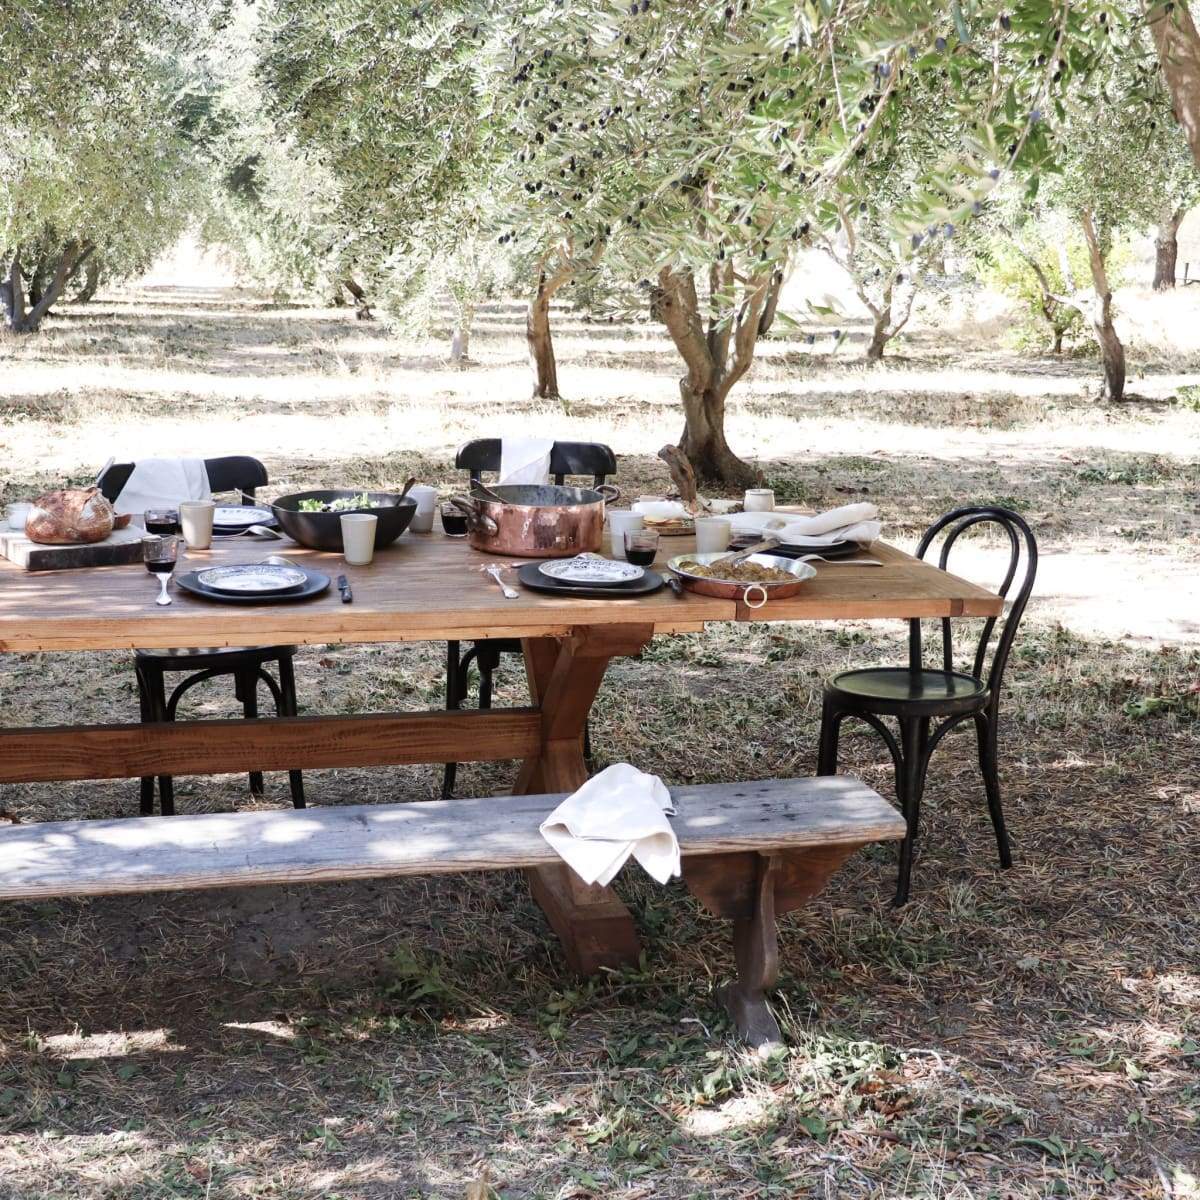 Large Farmhouse Table, Long Farm Table, Dining Room Table, Custom Table,  Wood Table, Barn Table, Distressed Farm Table, Custom Kitchen Table 